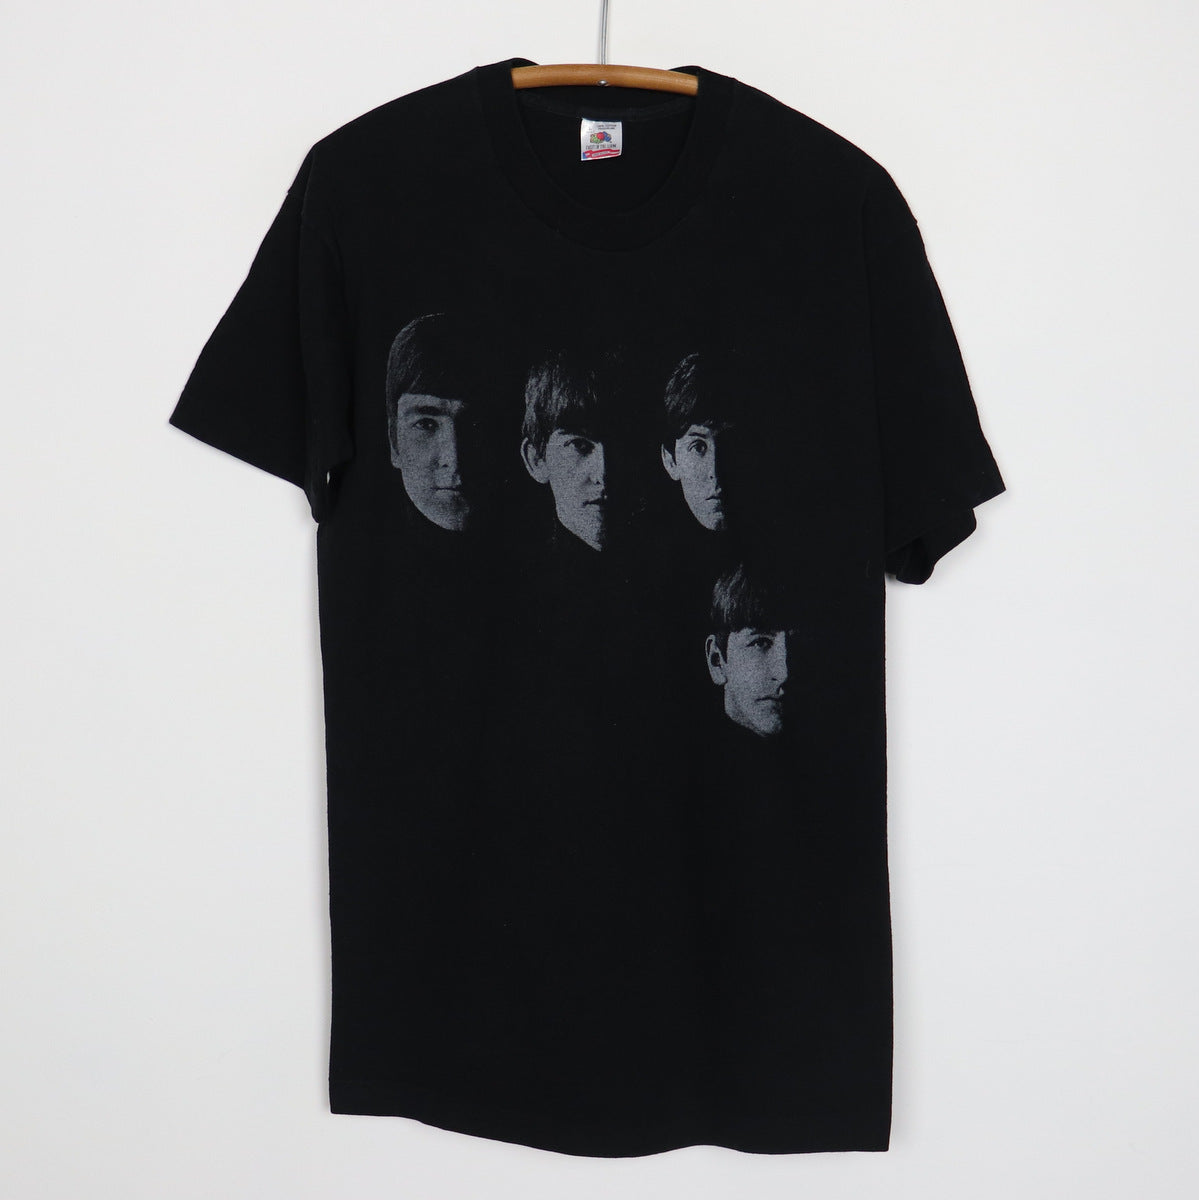 Repræsentere i tilfælde af skræmt 1992 Meet The Beatles Shirt – WyCo Vintage